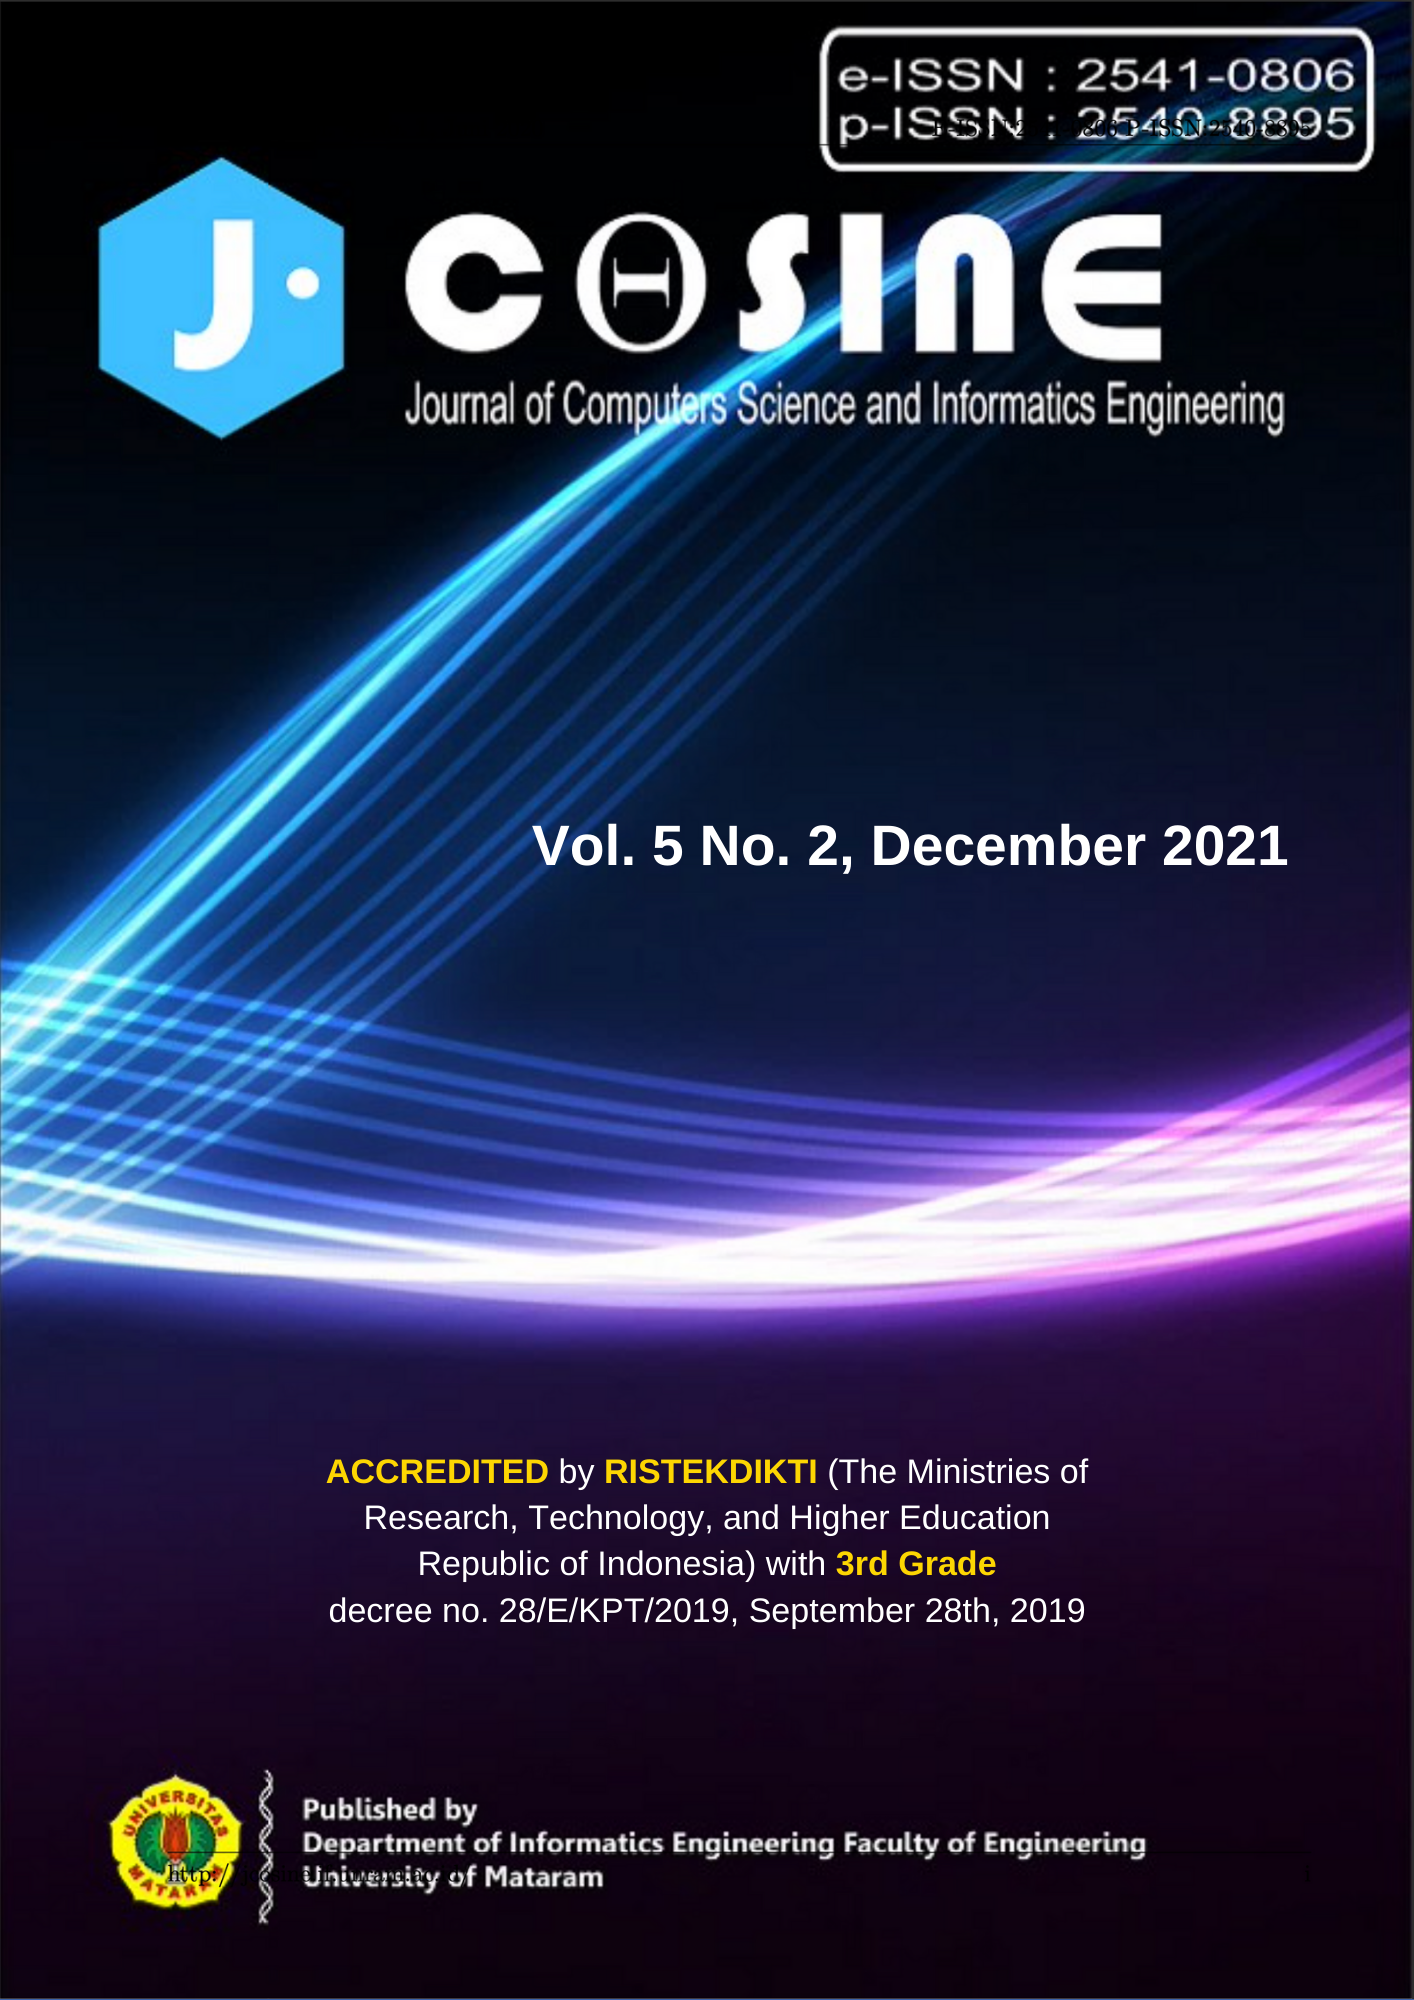 J-Cosine Cover Vol. 5, No. 2 December 2021